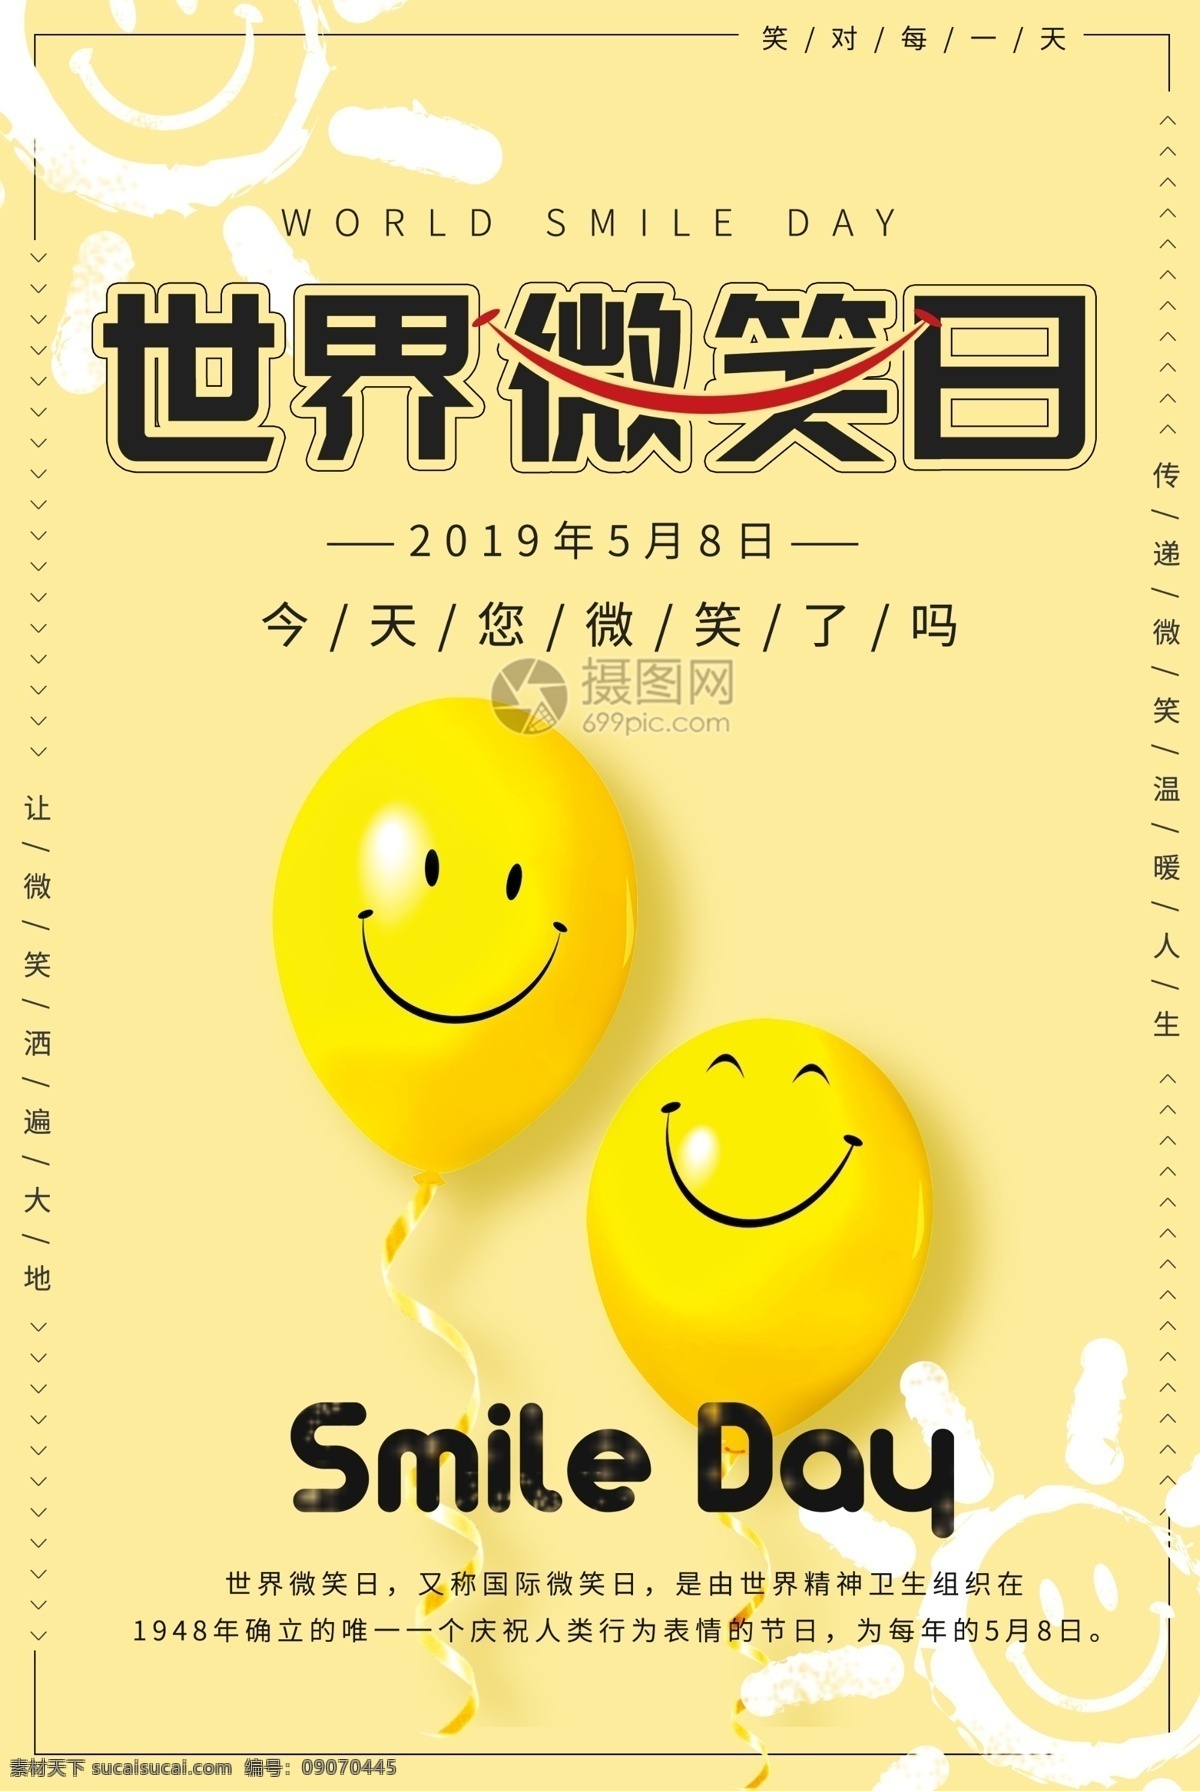 黄色 国际 微笑 日 海报 国际微笑日 世界微笑日 笑容 笑脸 笑颜 笑脸气球 黄色背景 黄色气球 国际节日 纪念日 节日海报 公益海报 微笑日海报